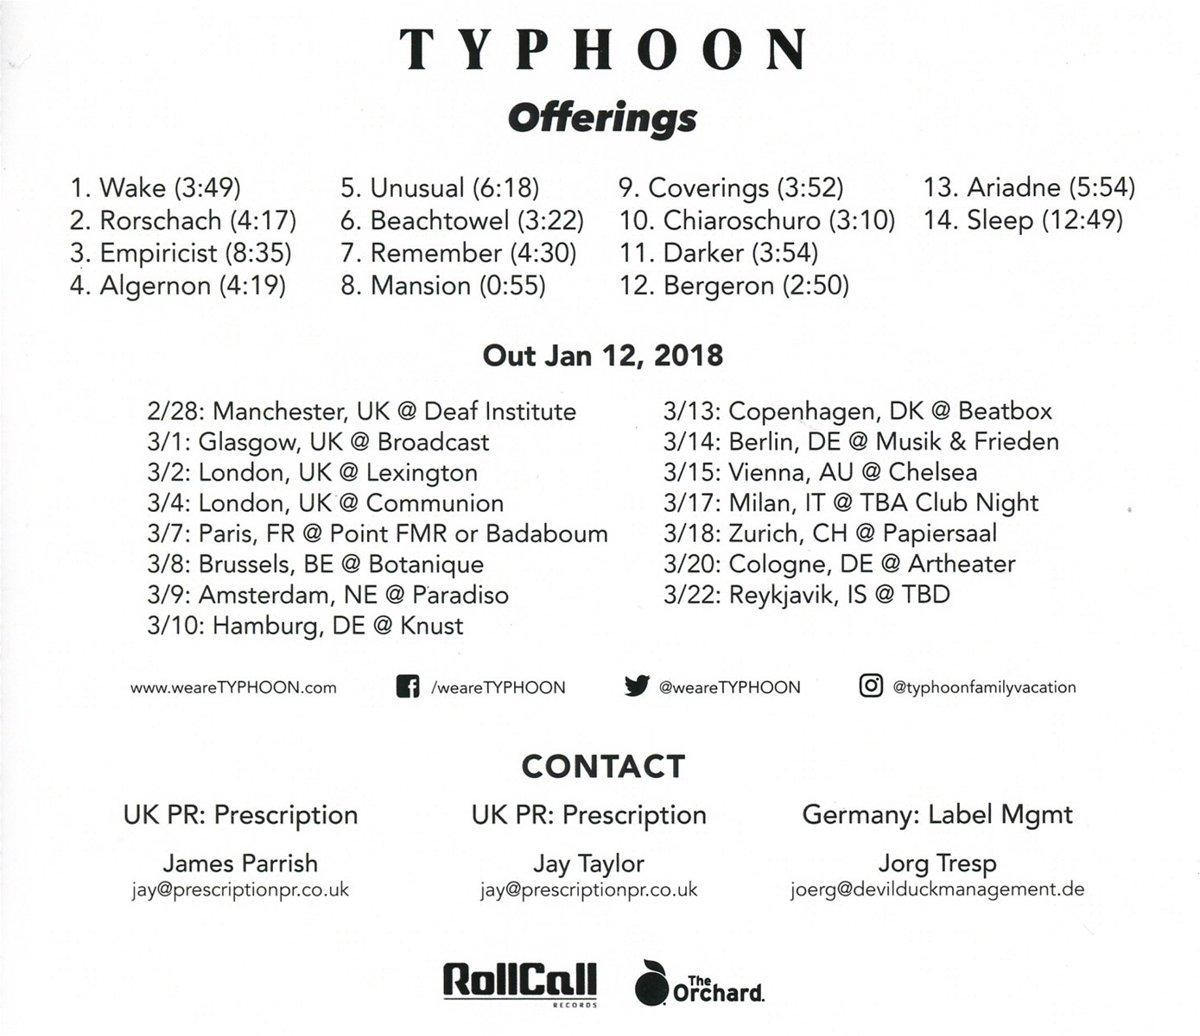 - (CD) - Typhoon Offerings